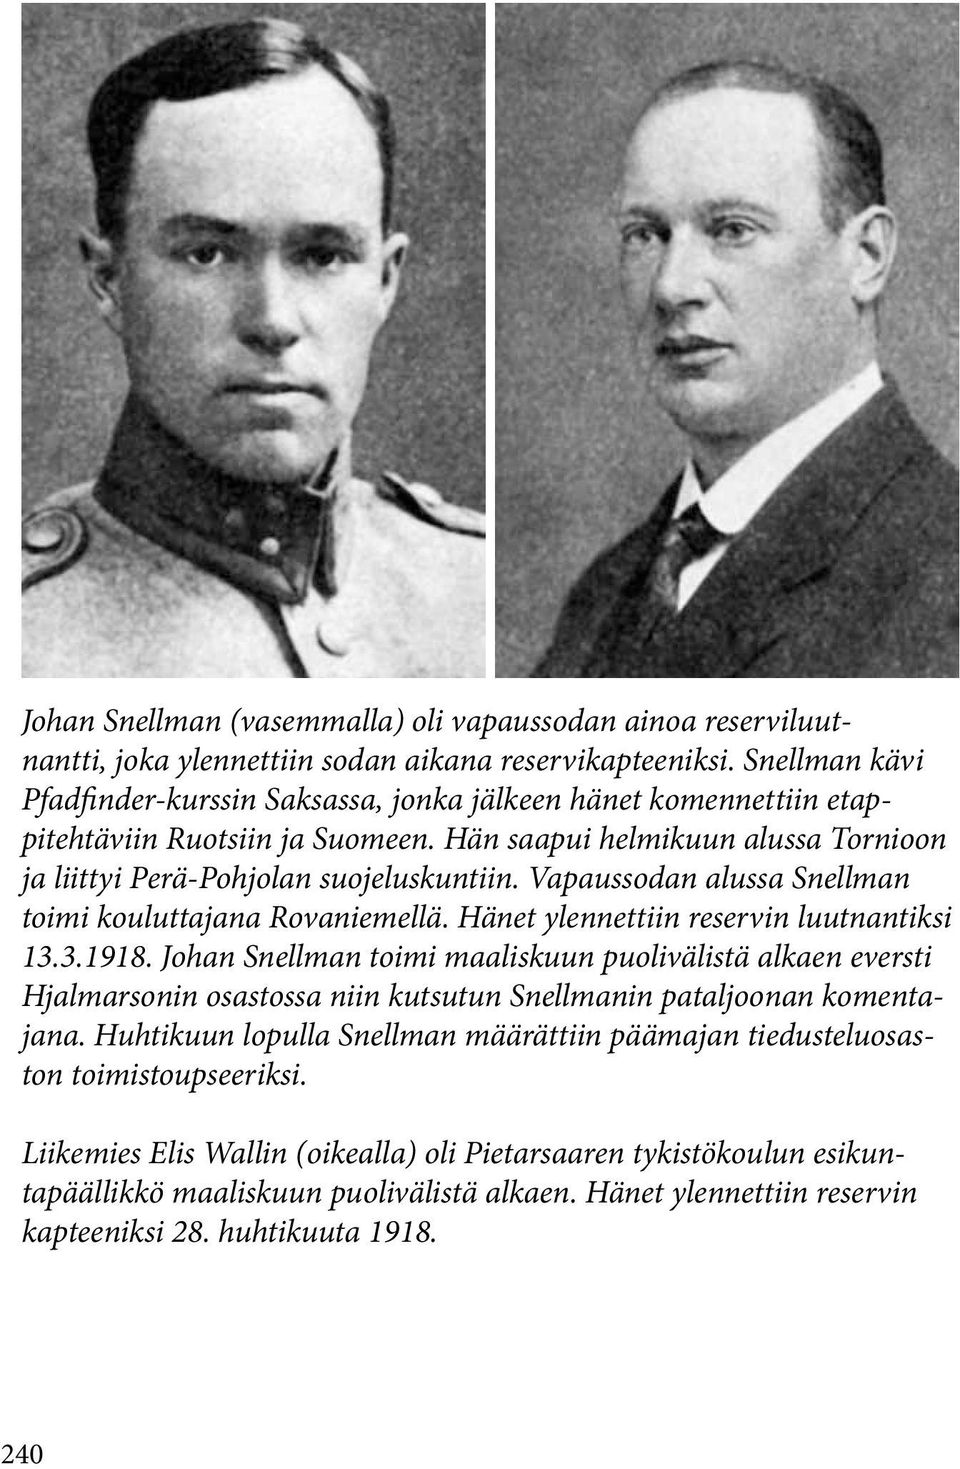 Vapaussodan alussa Snellman toimi kouluttajana Rovaniemellä. Hänet ylennettiin reservin luutnantiksi 13.3.1918.